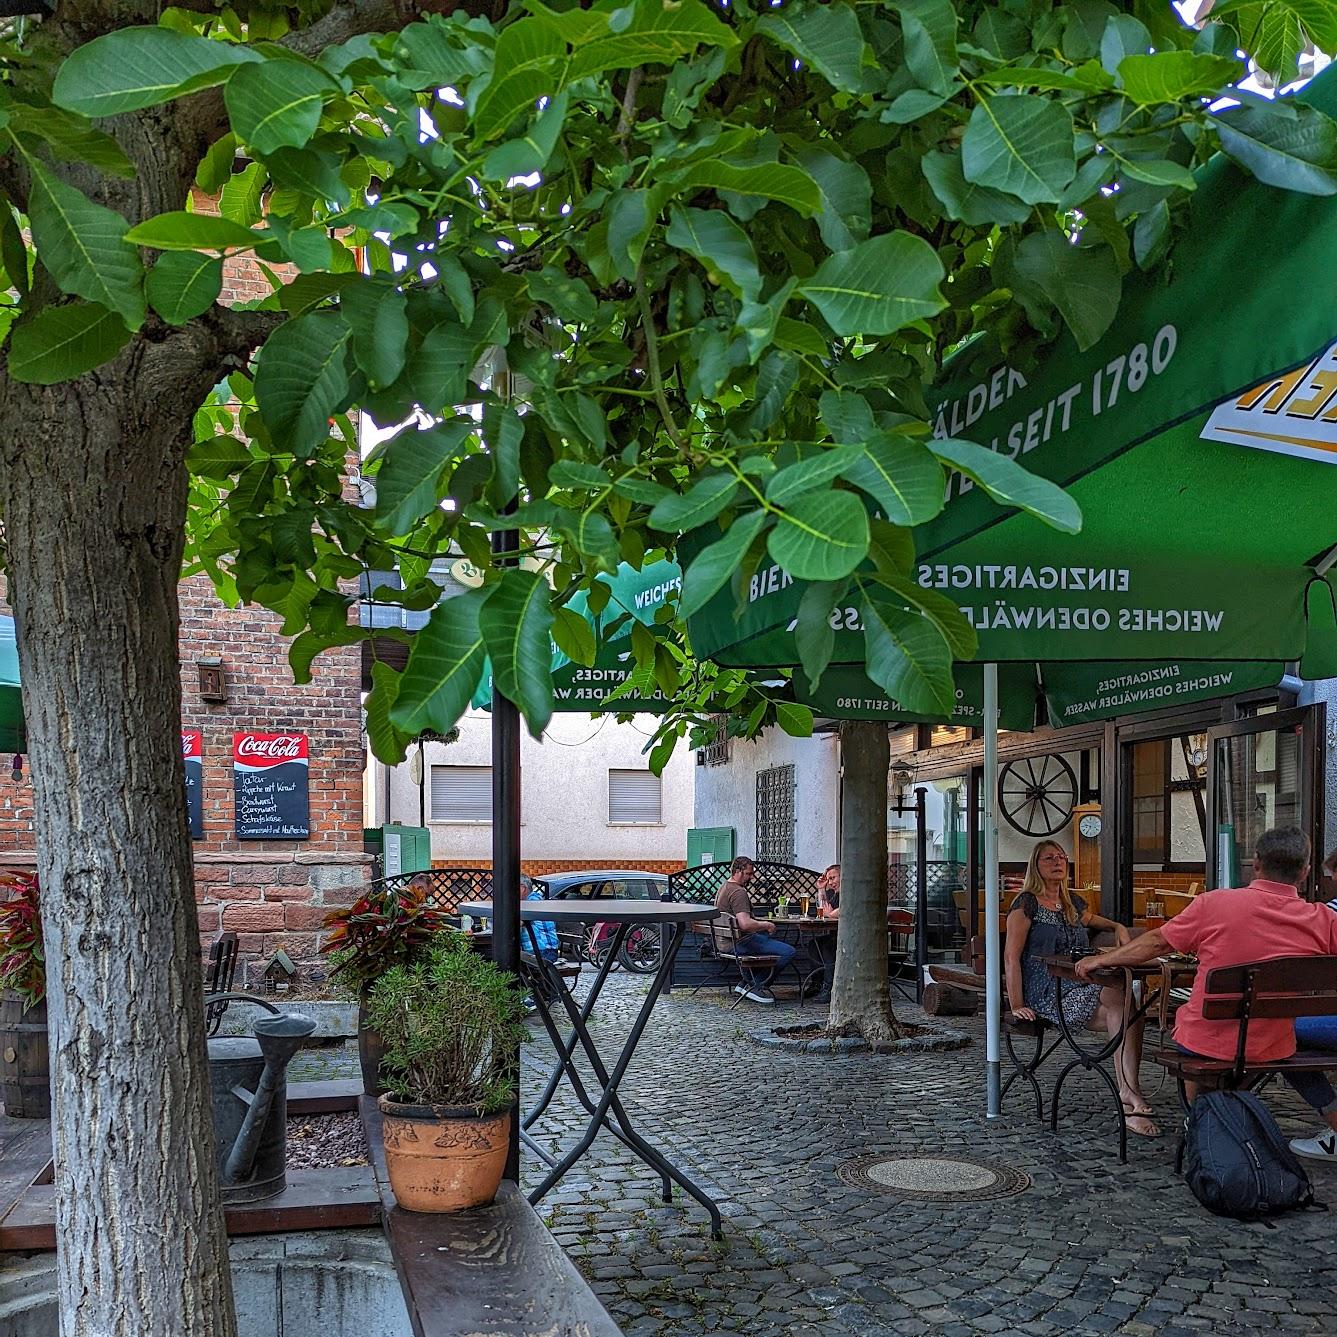 Restaurant "Gaststätte Zur Schönen Aussicht" in Weiterstadt